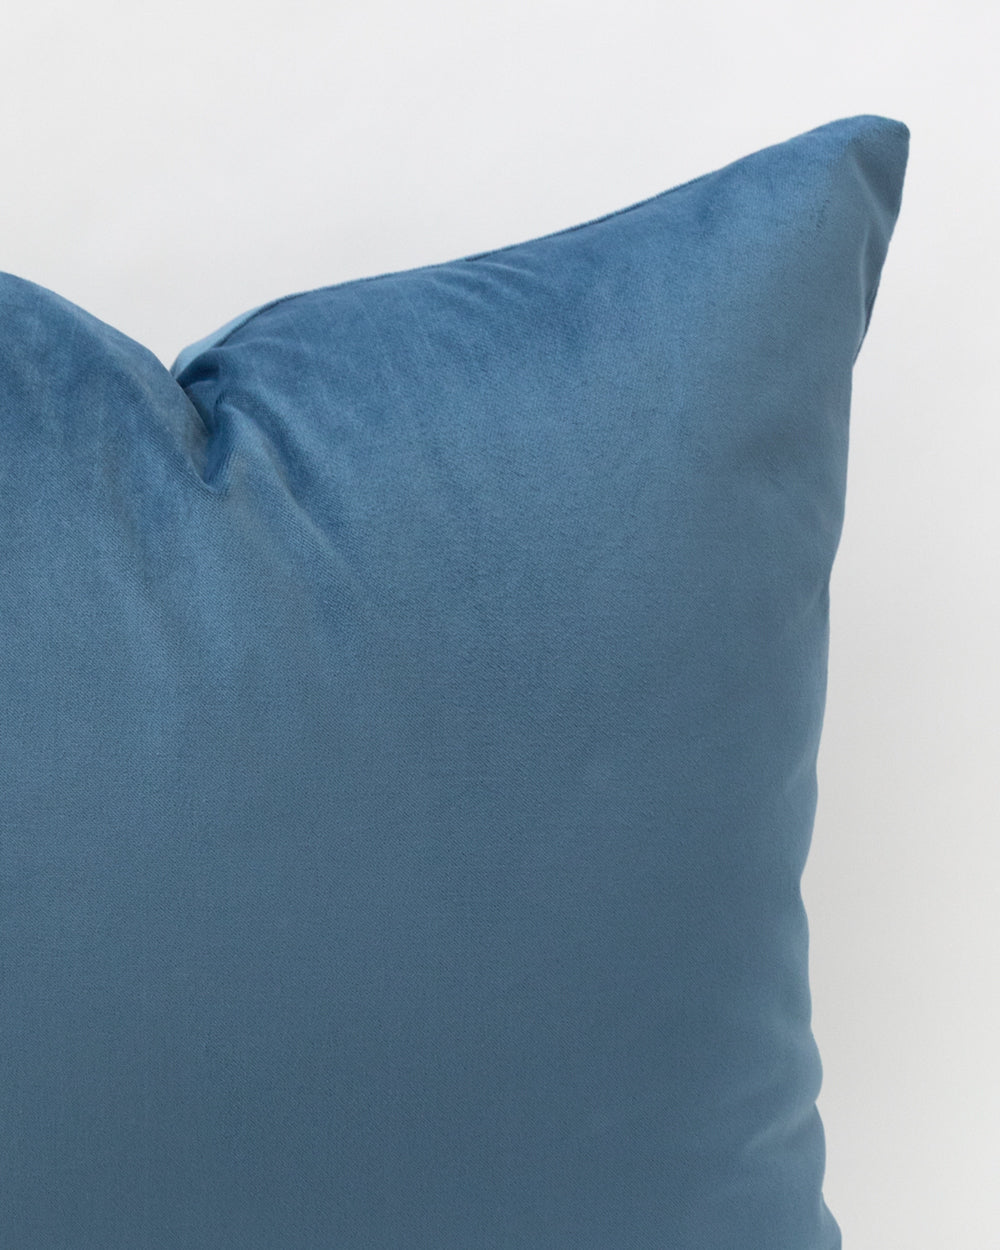 Wren Velvet Pillow Cover, Cerulean Blue